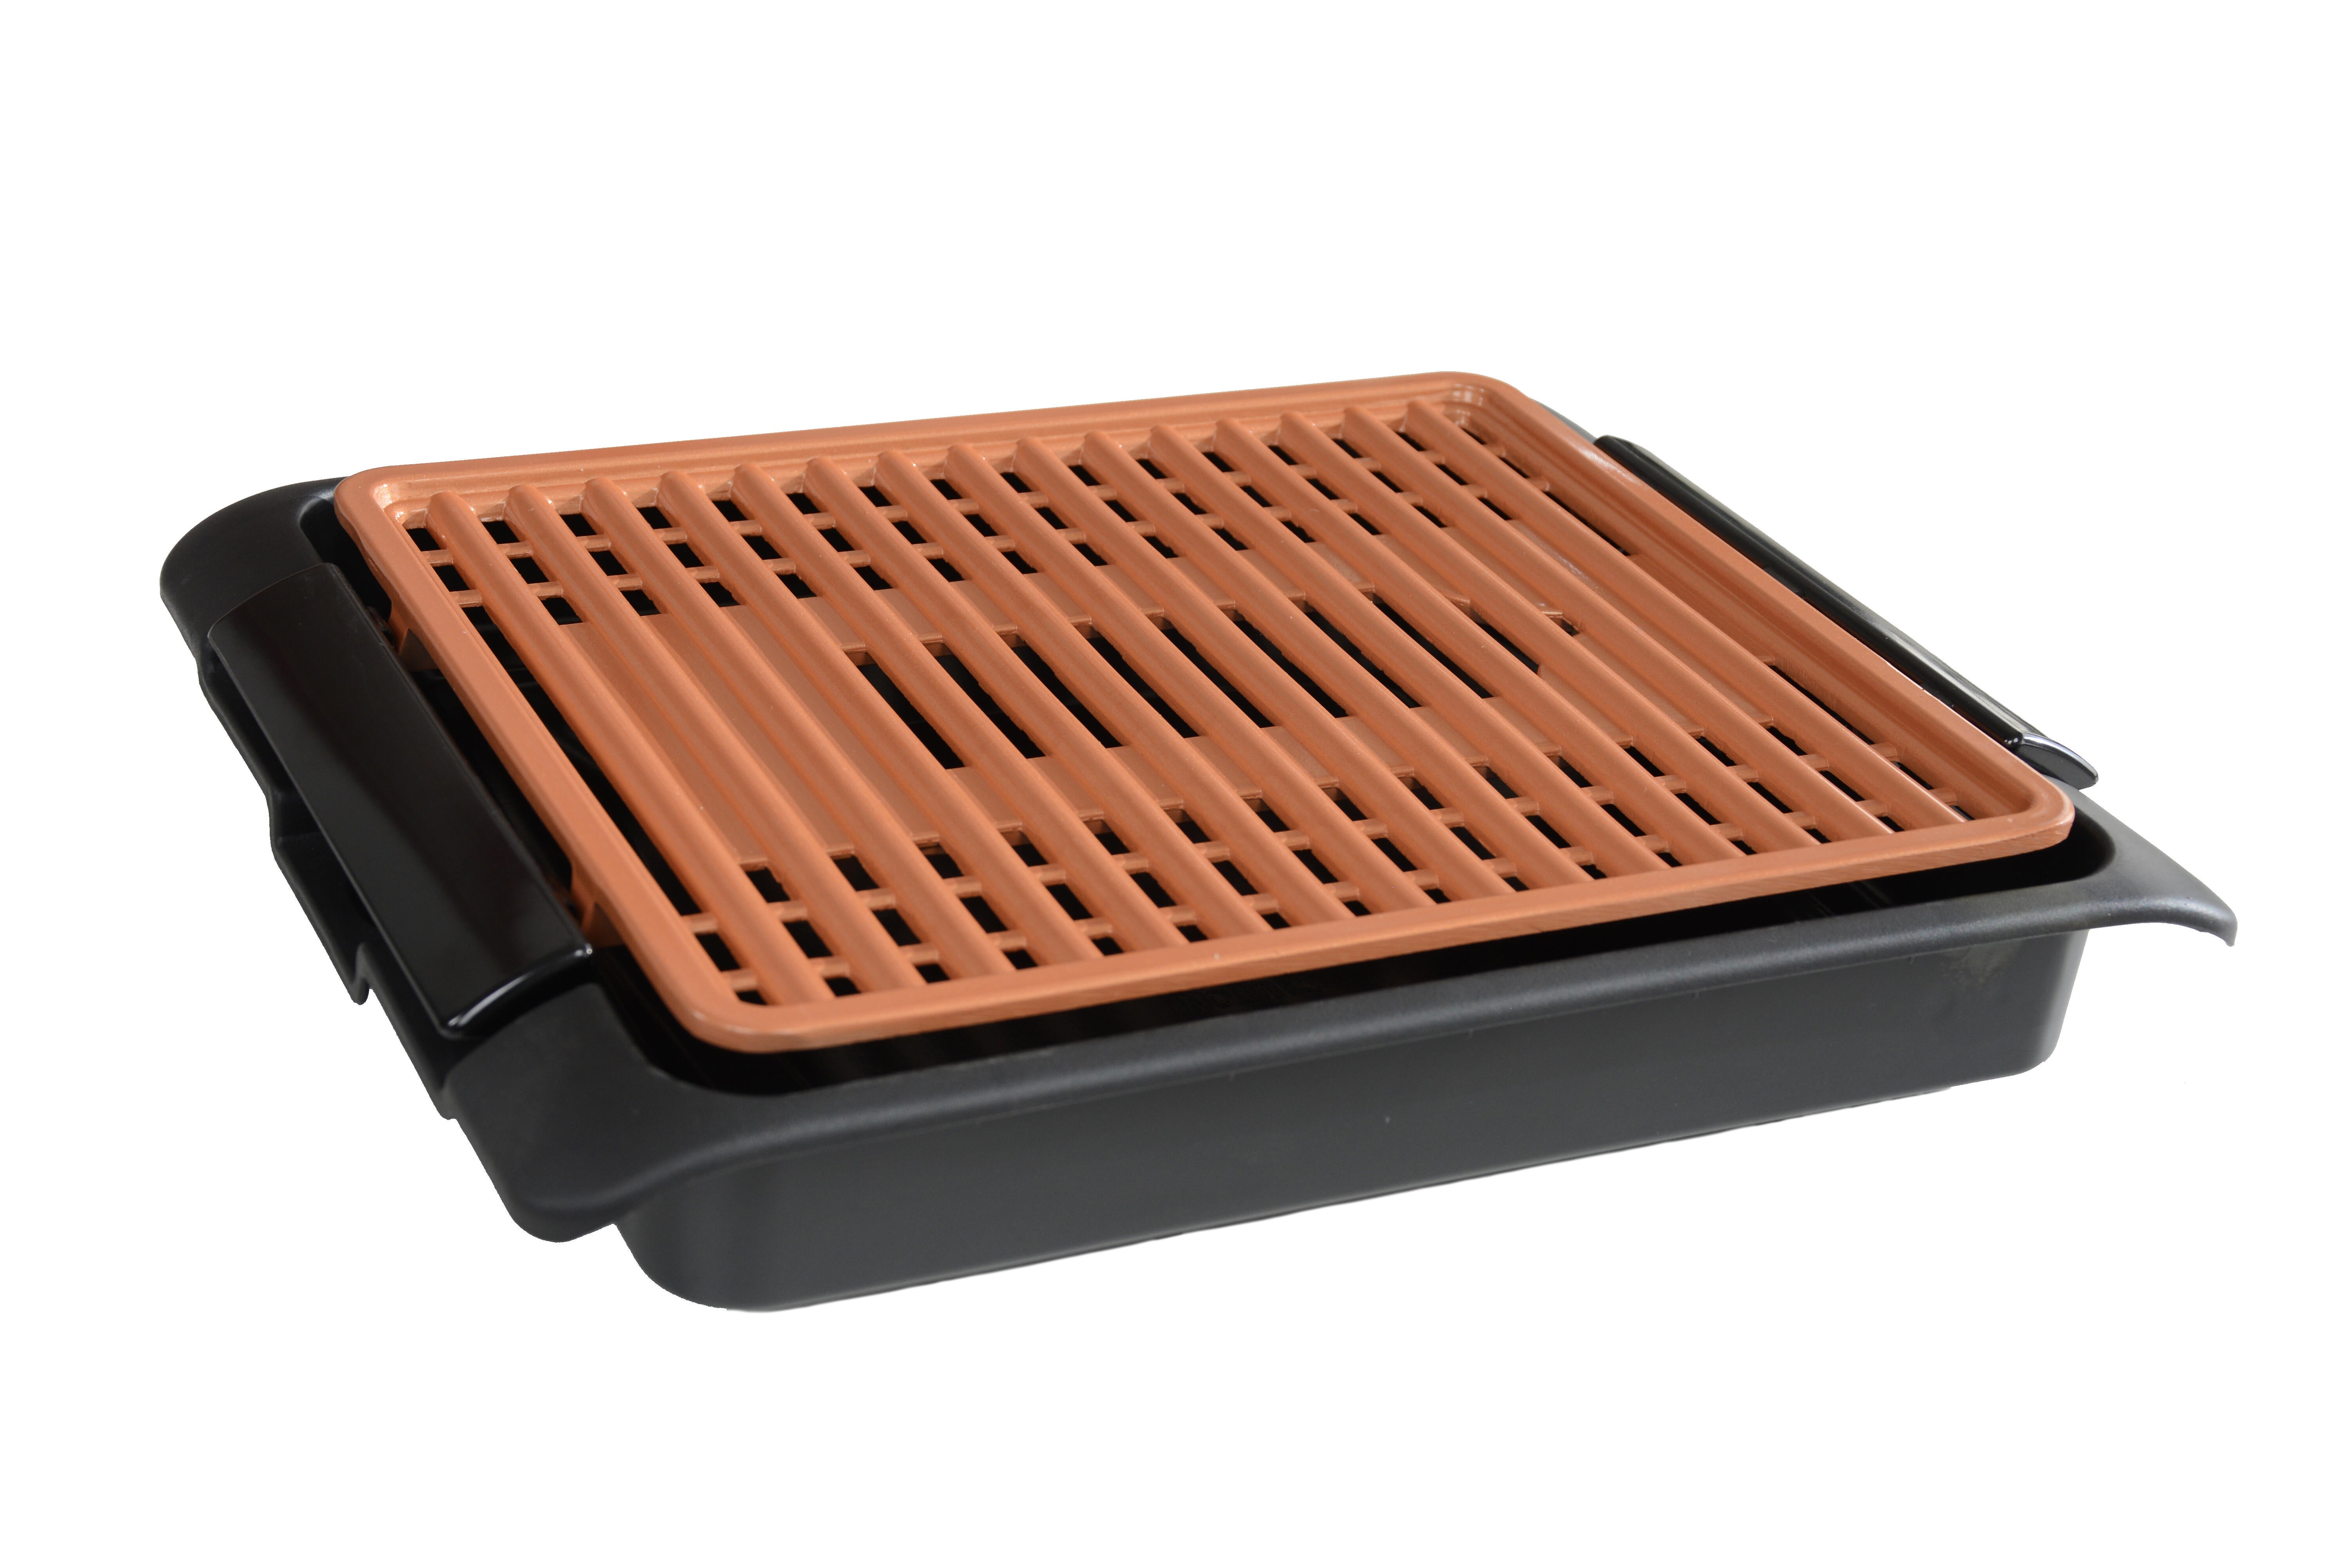 Plancha eléctrica starlyf smokefree copper grill para 4 personas de 1250 w